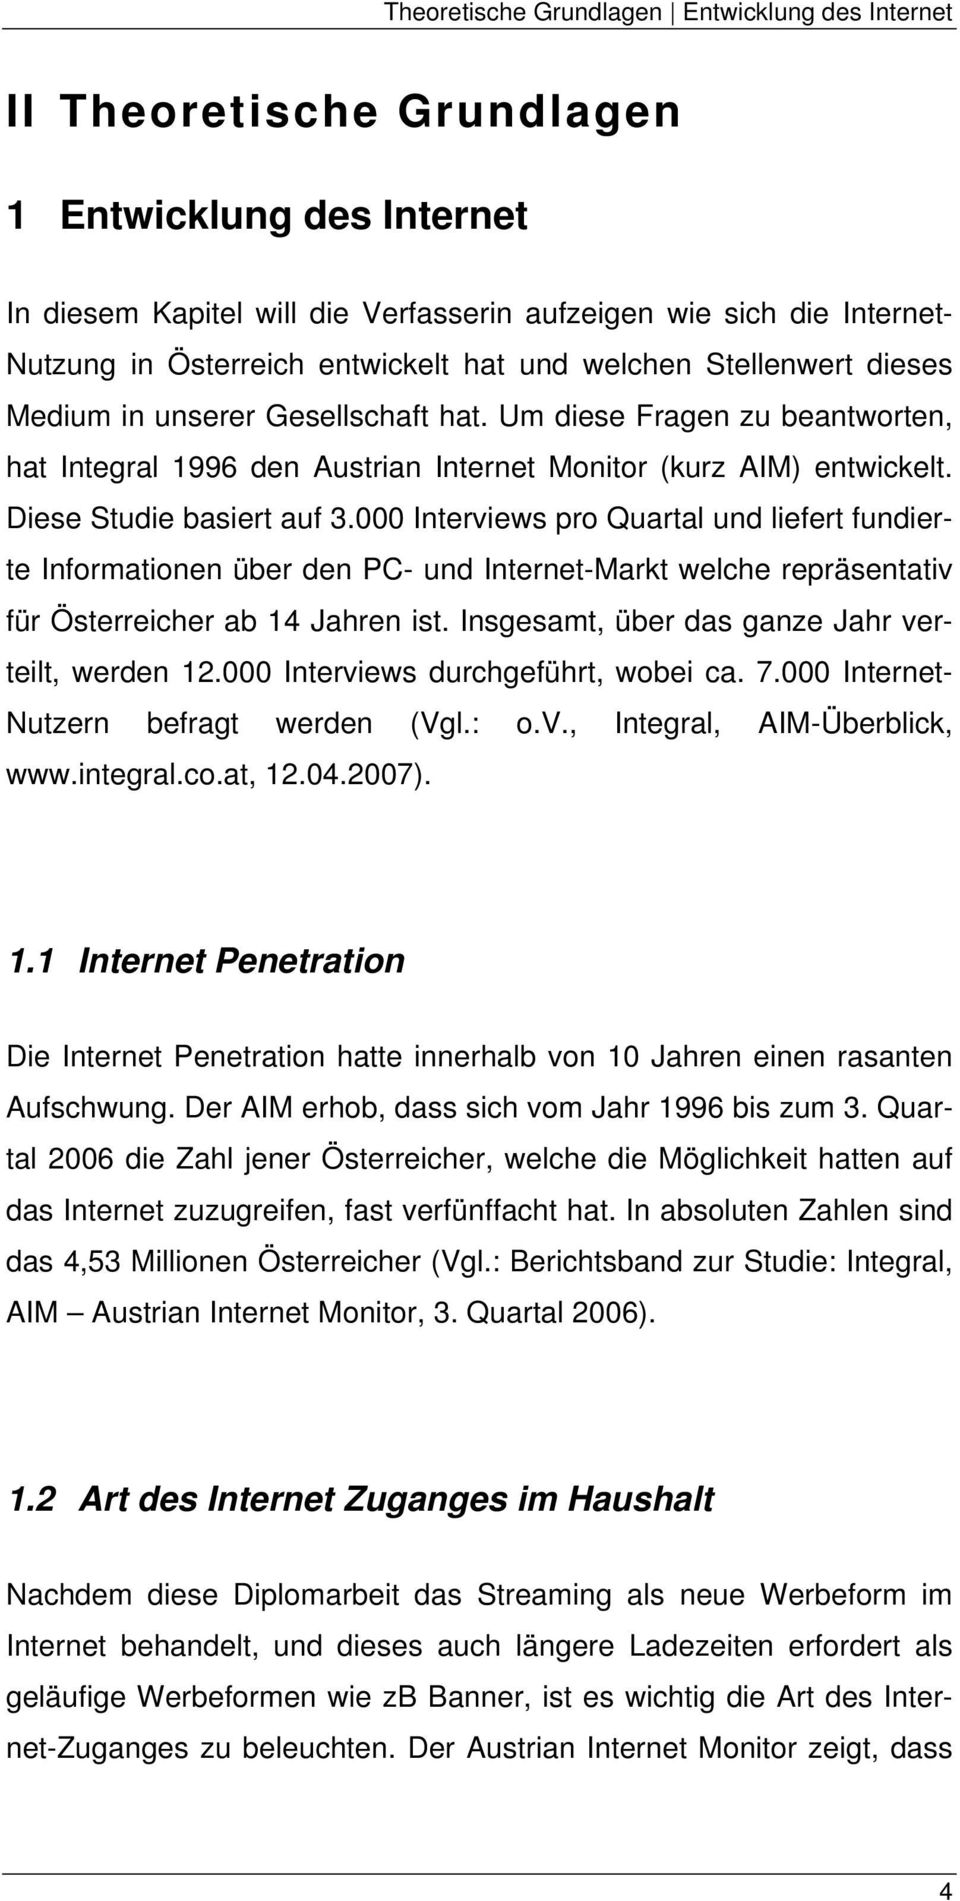 Diese Studie basiert auf 3.000 Interviews pro Quartal und liefert fundierte Informationen über den PC- und Internet-Markt welche repräsentativ für Österreicher ab 14 Jahren ist.